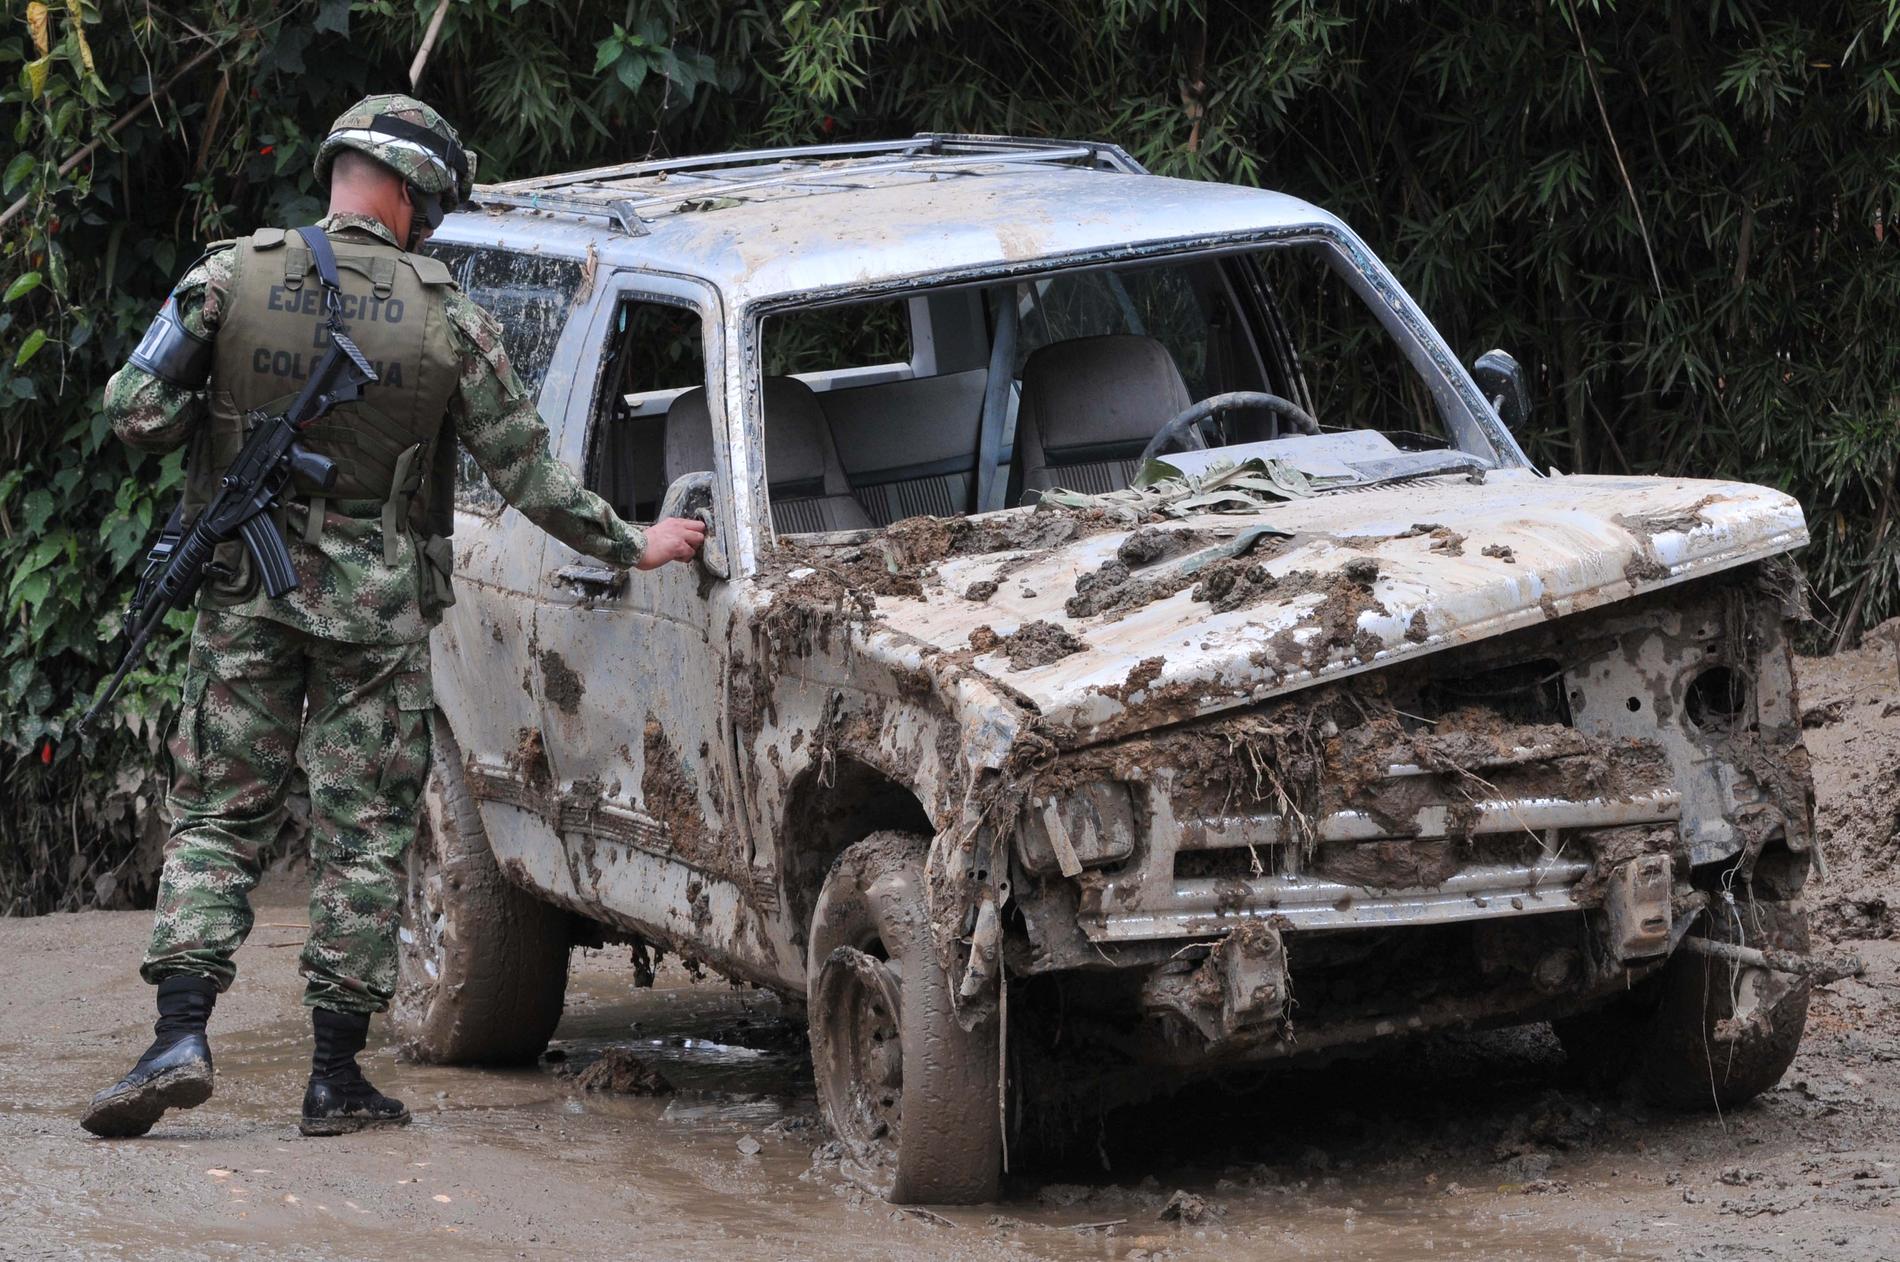 En soldat undersöker en bil som skadats i ett jordskred i Colombia 2011.